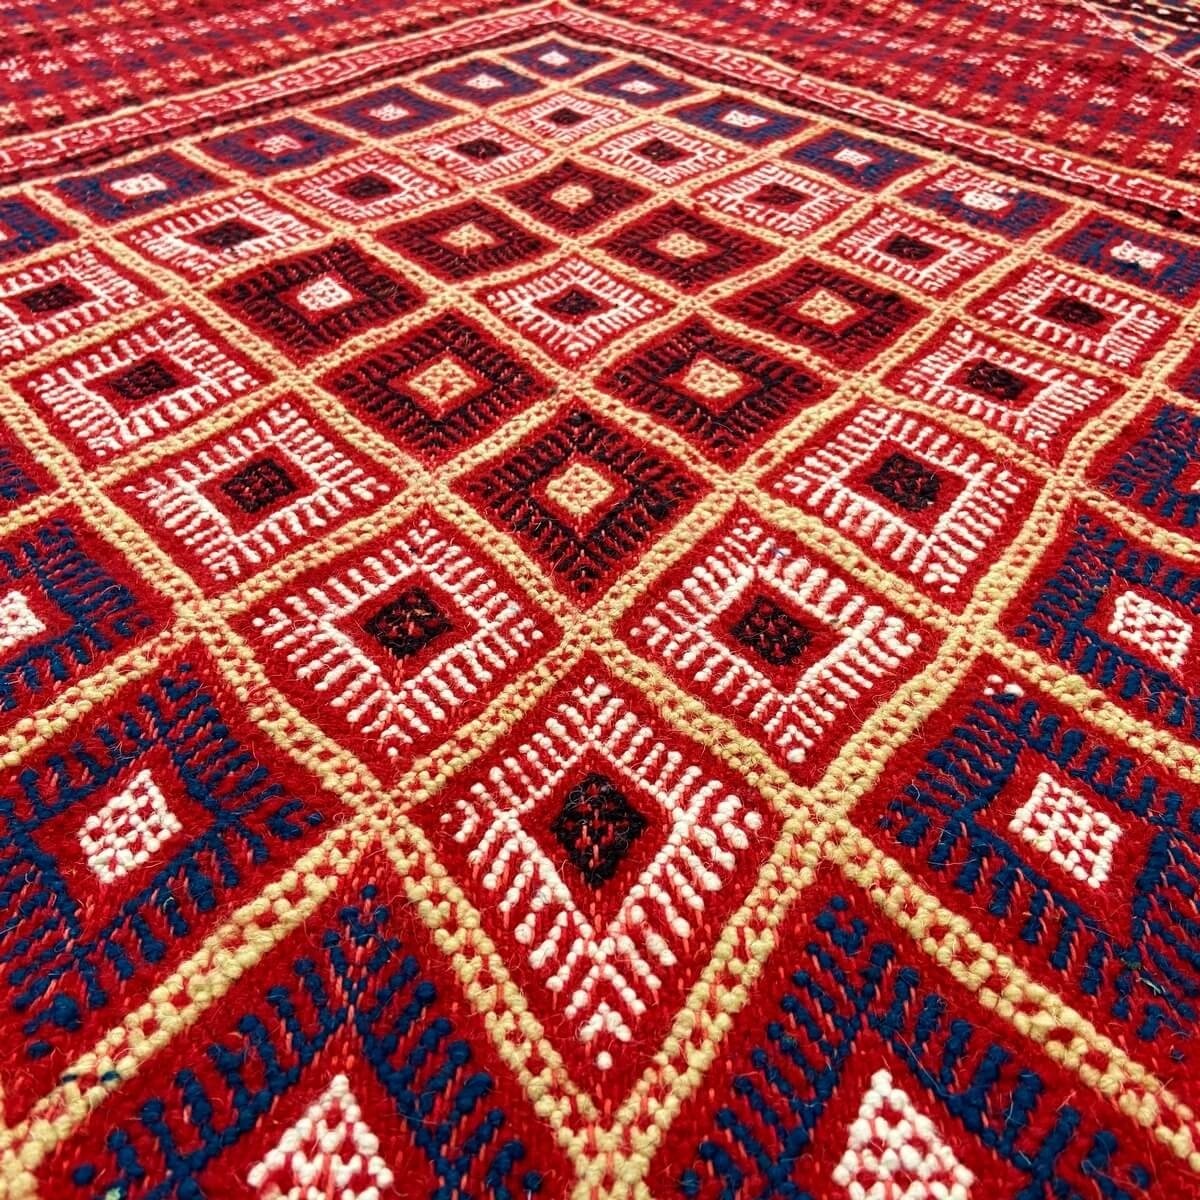 Berber tapijt Tapijt Margoum Azid 128x200 Rood (Handgeweven, Wol, Tunesië) Tunesisch Margoum Tapijt uit de stad Kairouan. Rechth